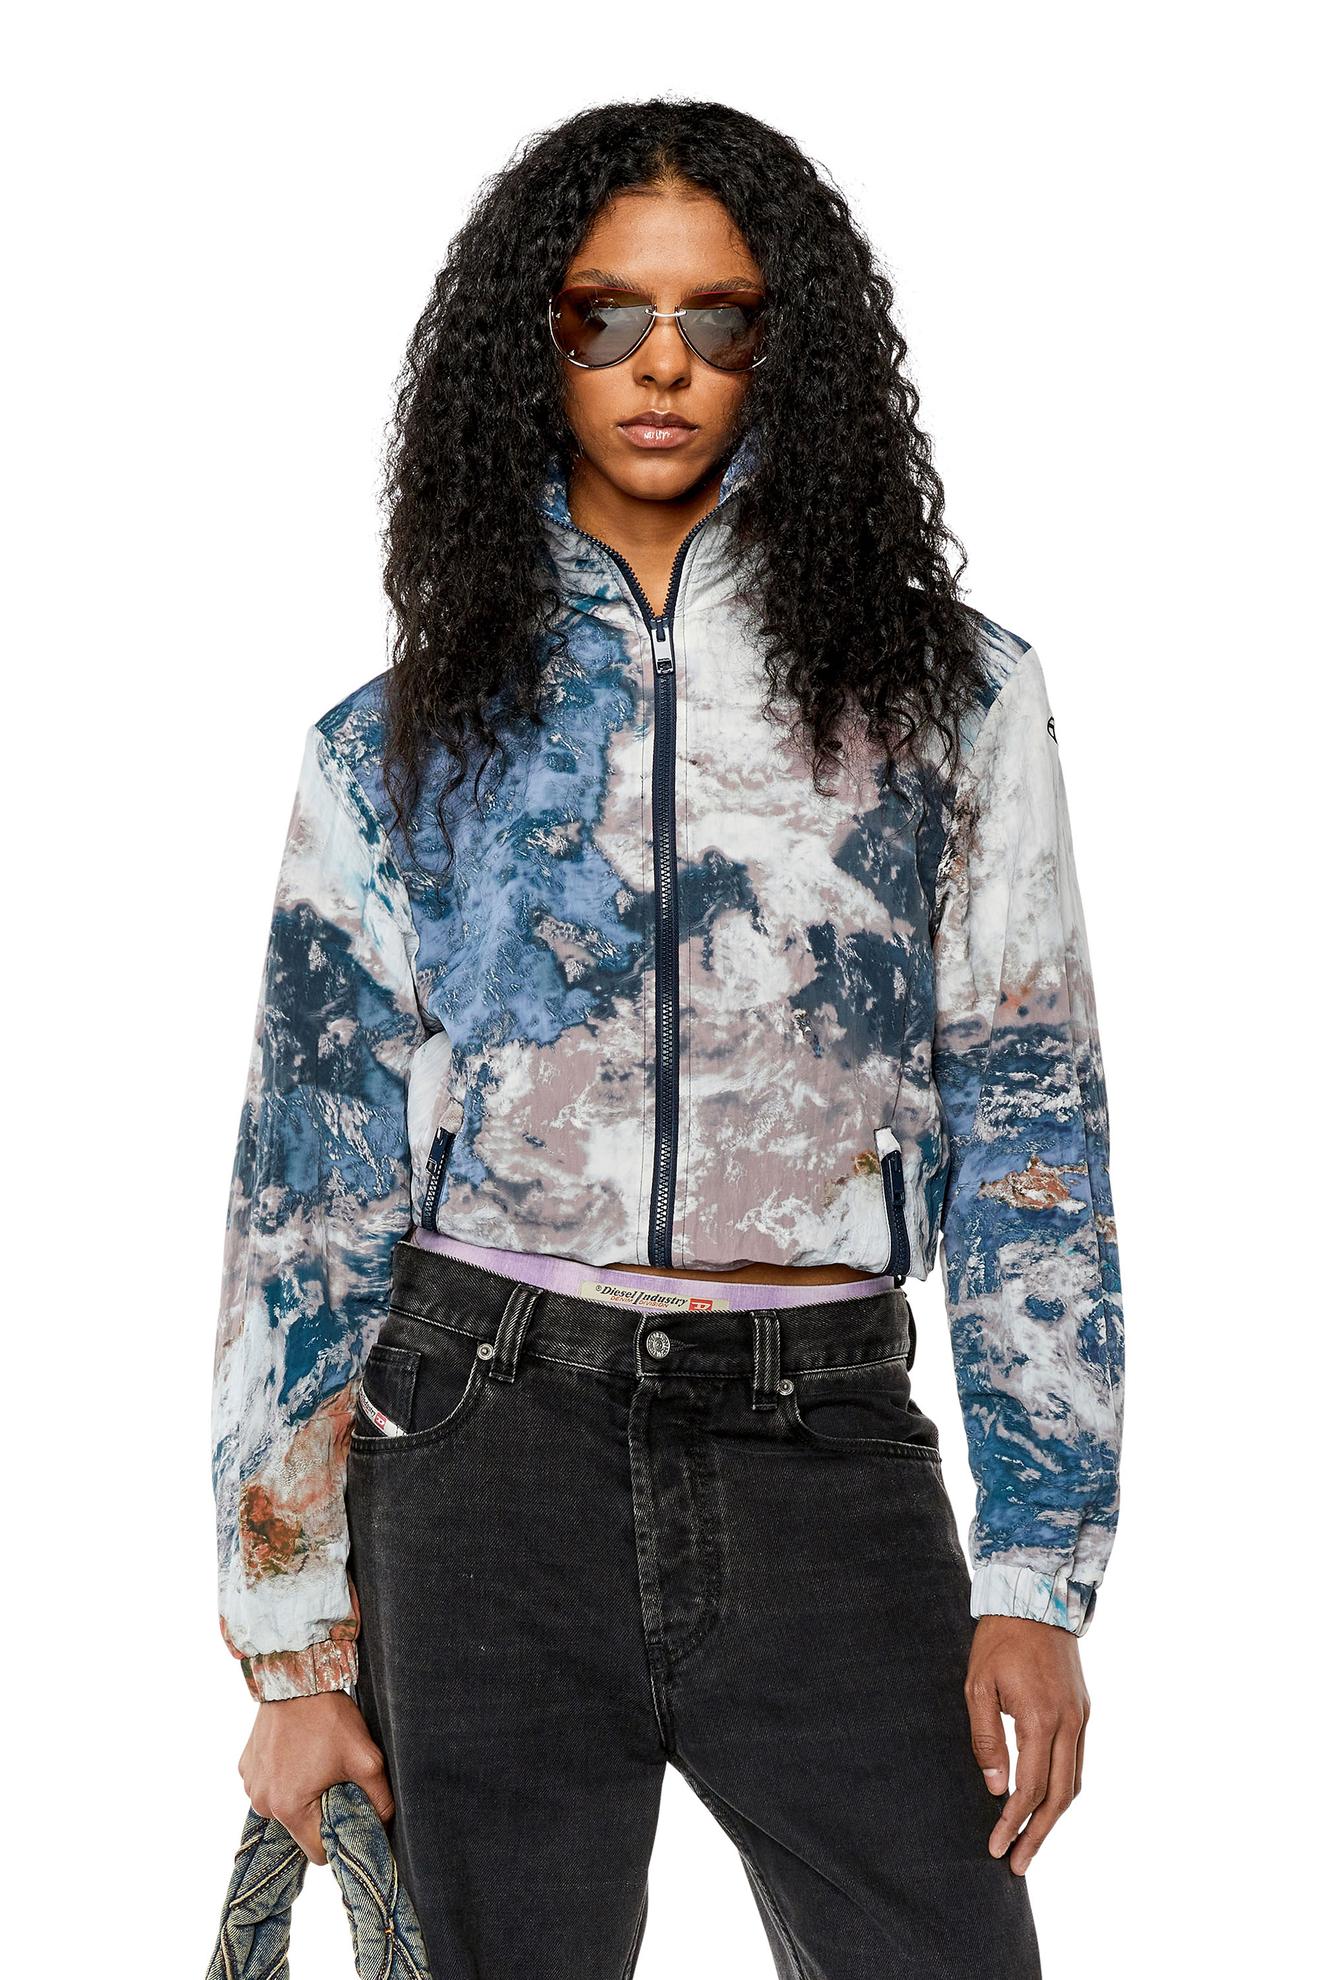 Προσφορά Hooded jacket with Planet print για 129€ σε DIESEL